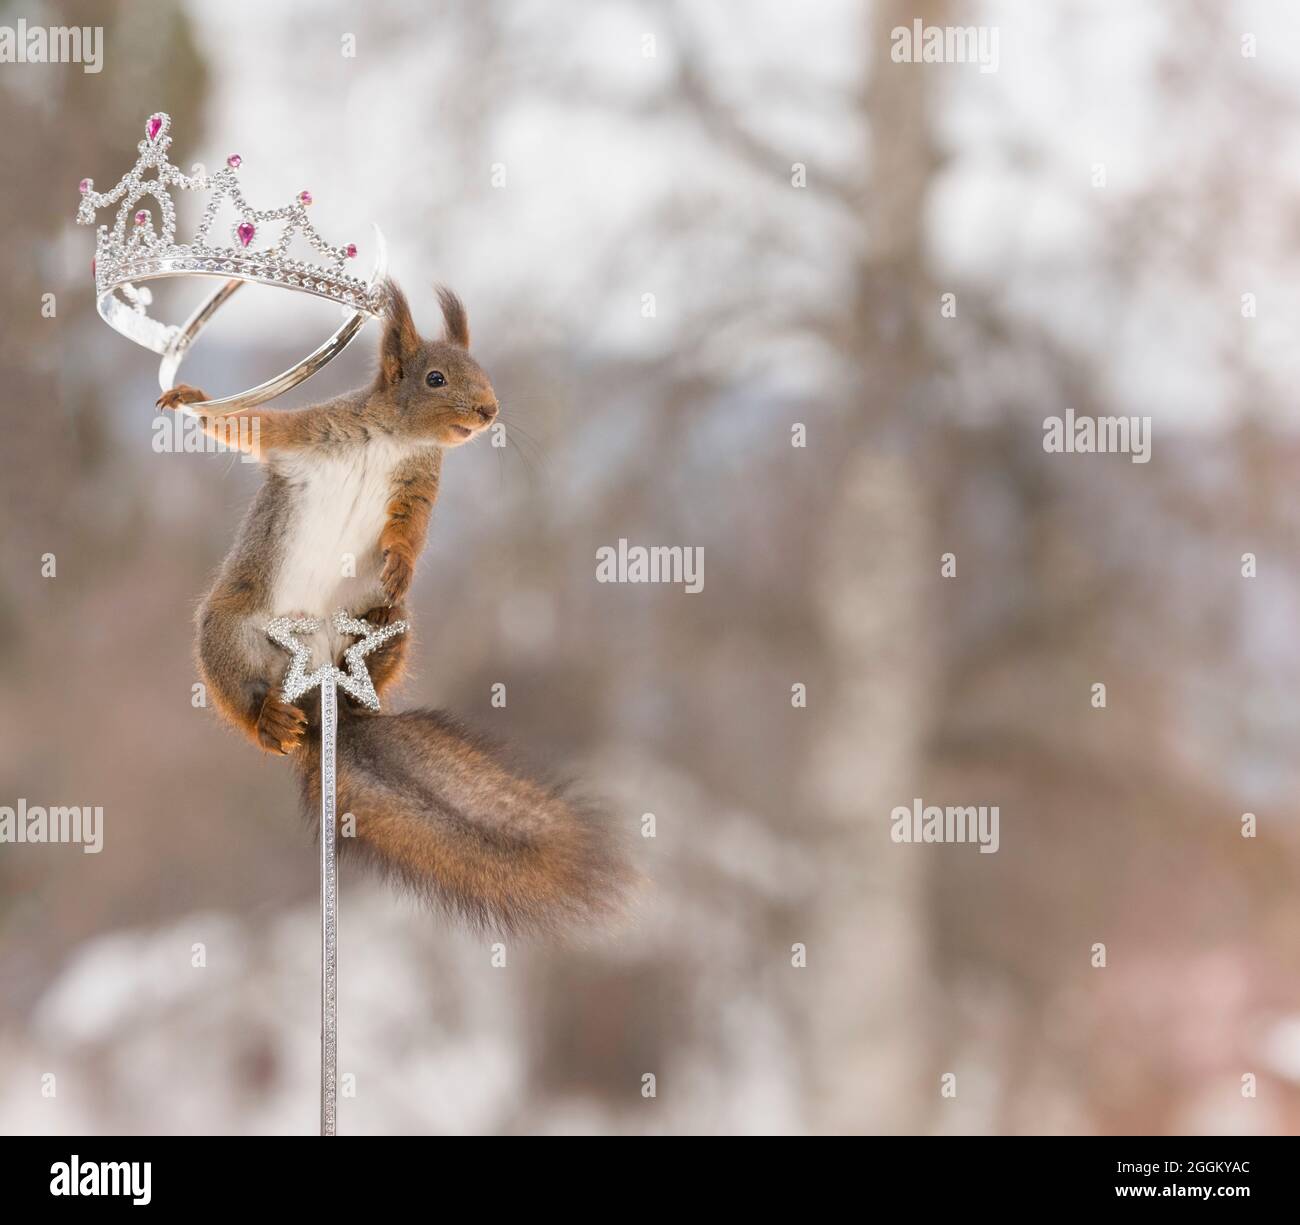 Eichhörnchen auf einem Stock Holding eine Krone Stockfoto